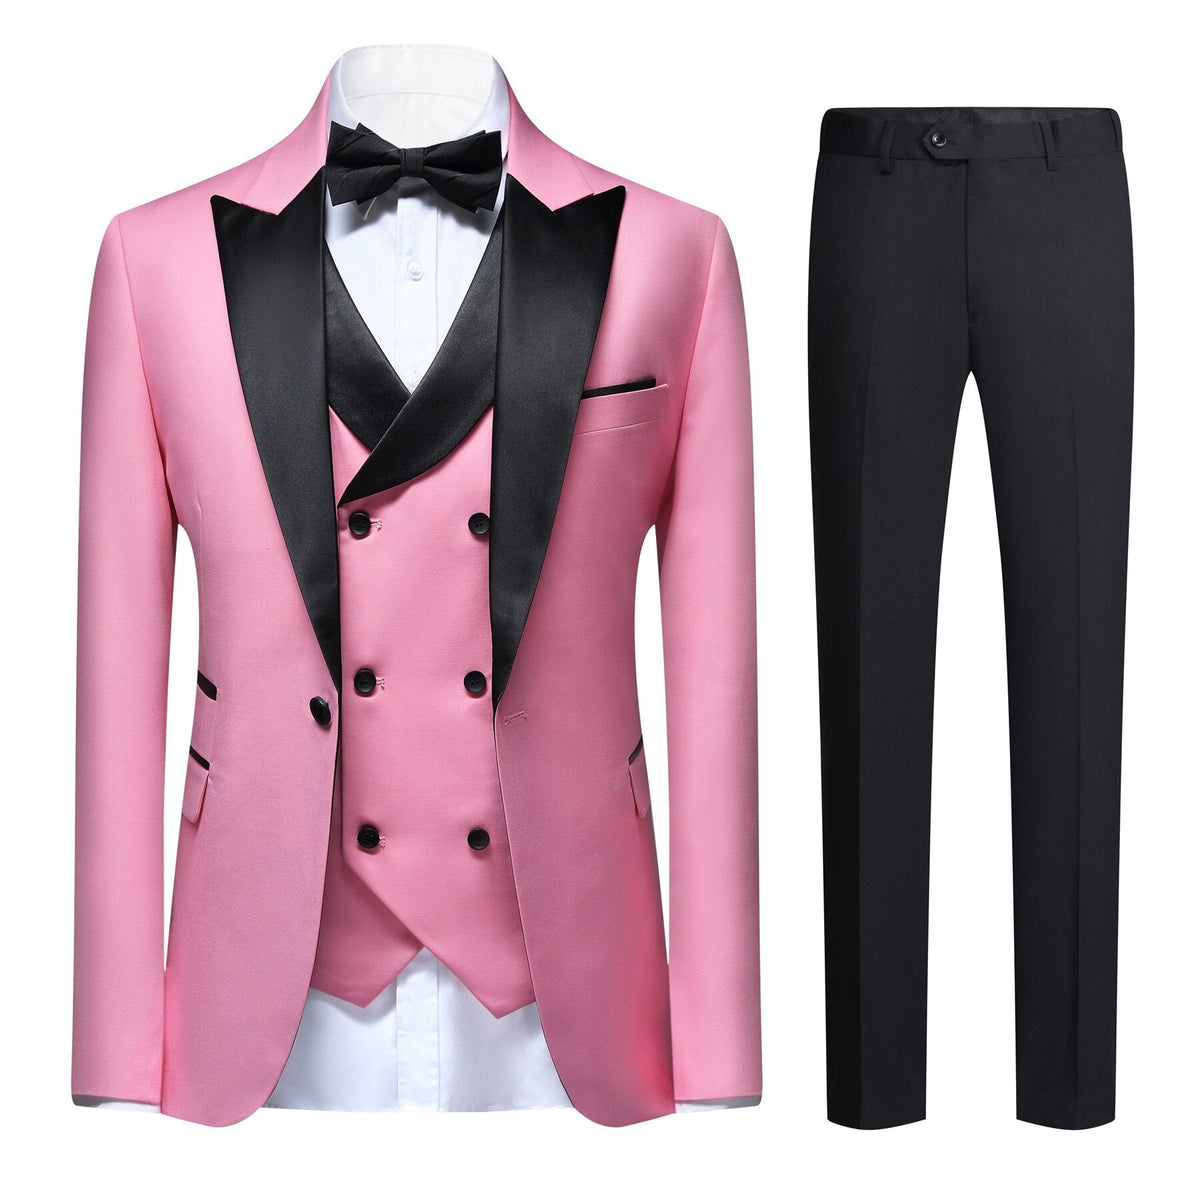 3-piece Men's Solid Color Notched Lapel Back Center Vent Suit Pink